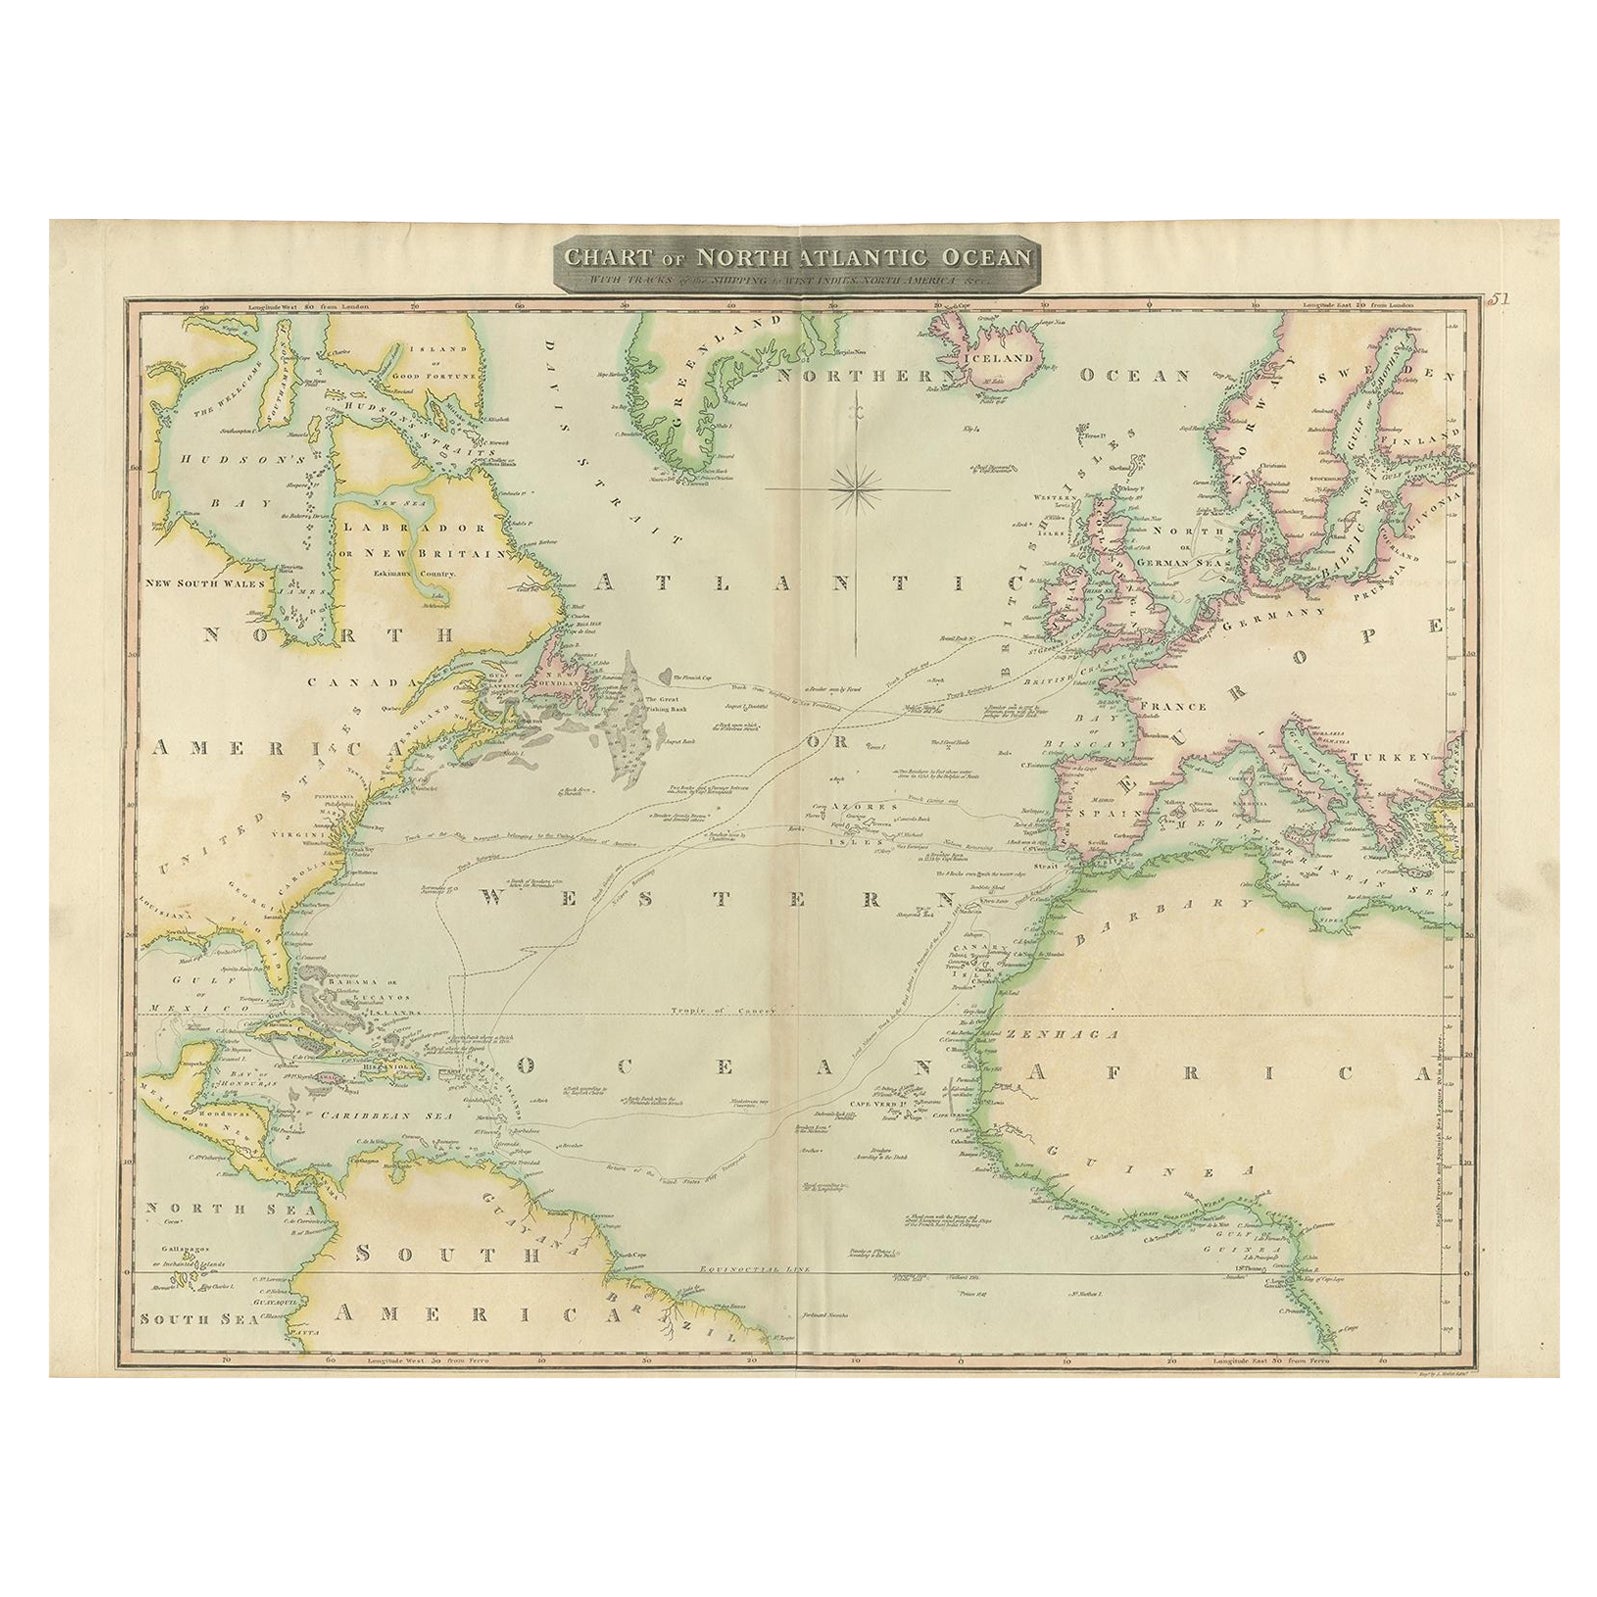 Intéressante carte de l'Atlantic montrant les routes de Nelson et du commerce, 1817